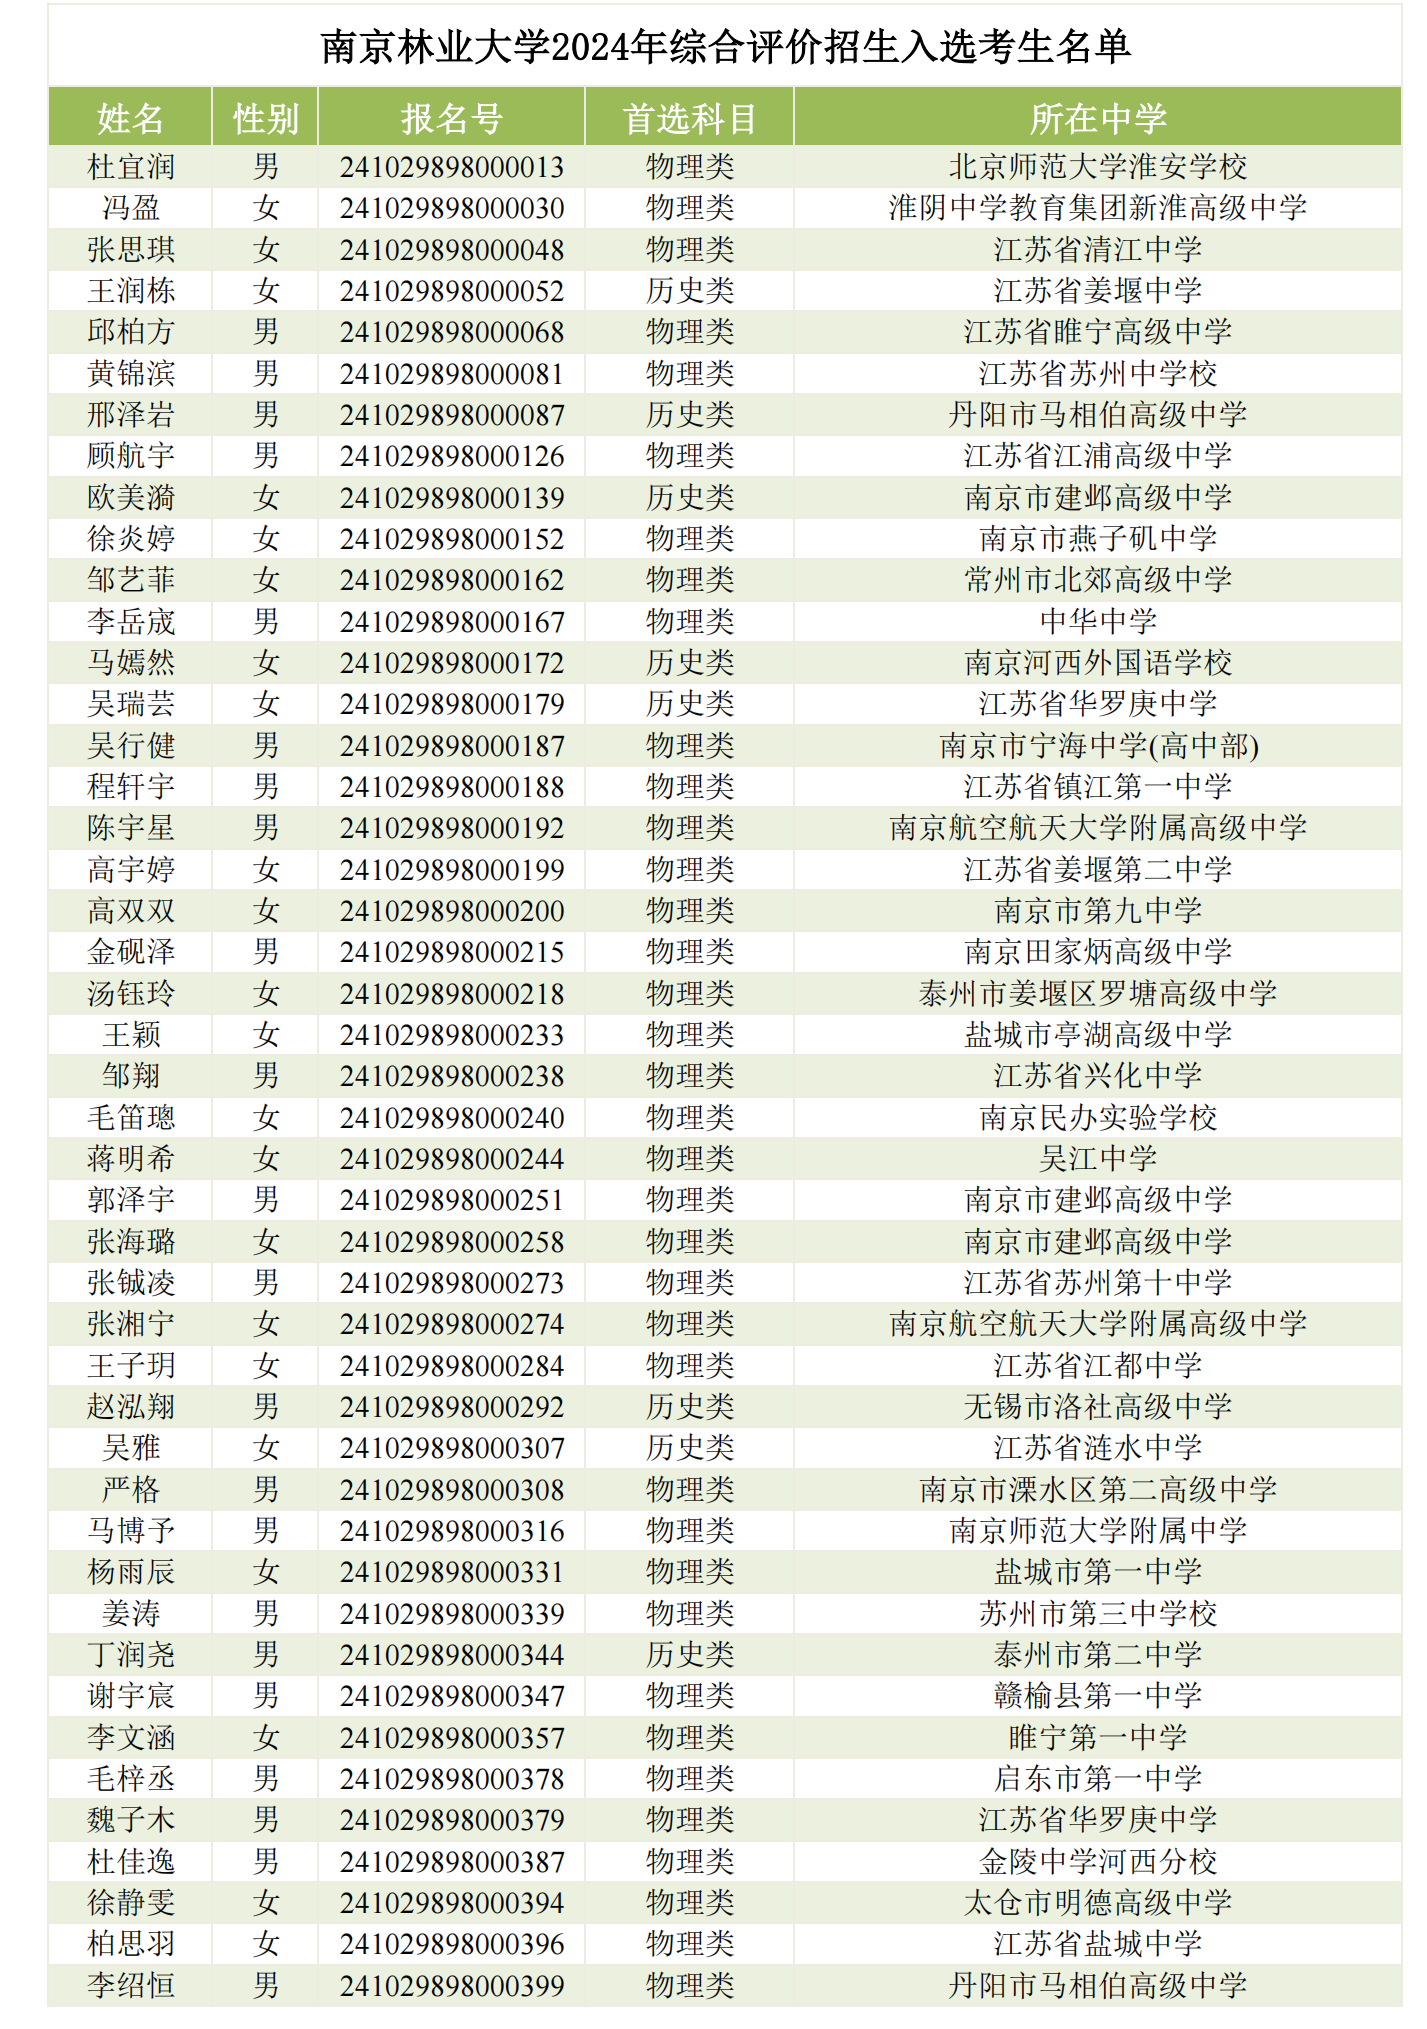 南京林业大学2024年综合评价招生入选考生名单公示